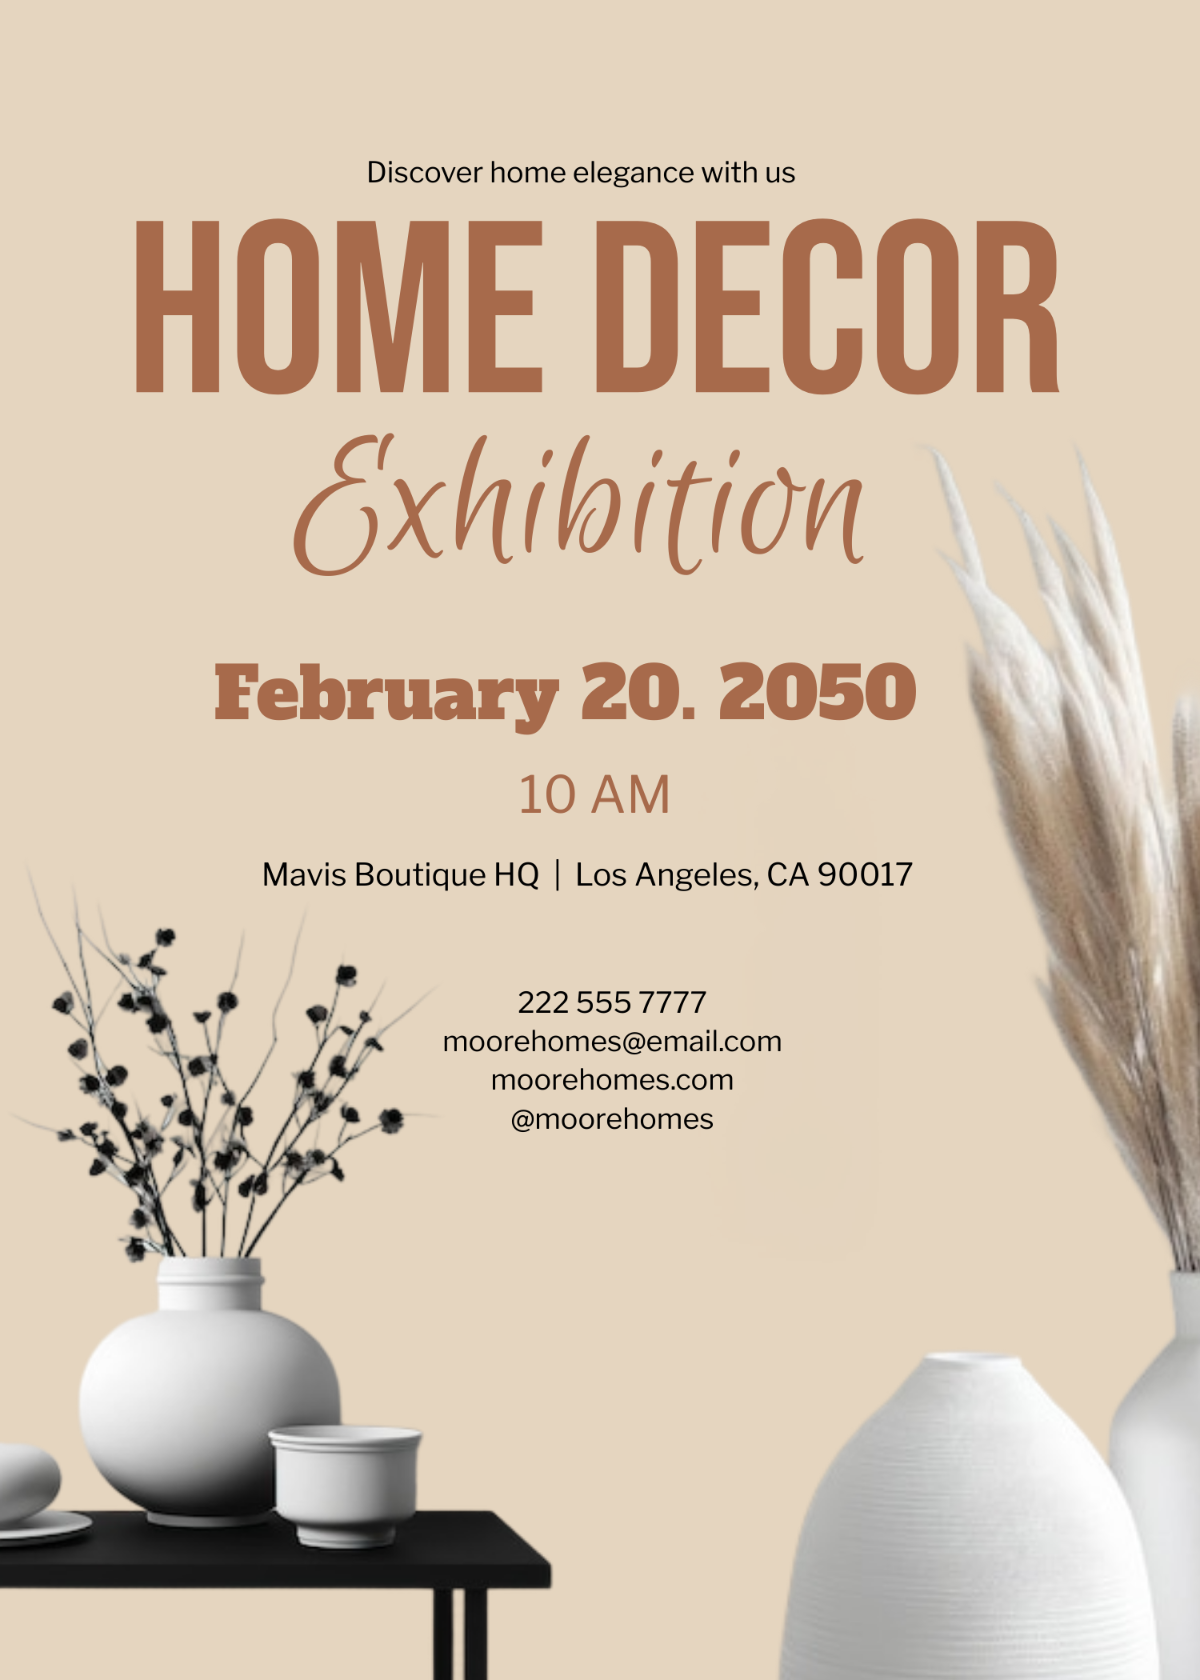 Home Decor Exhibition Invitation